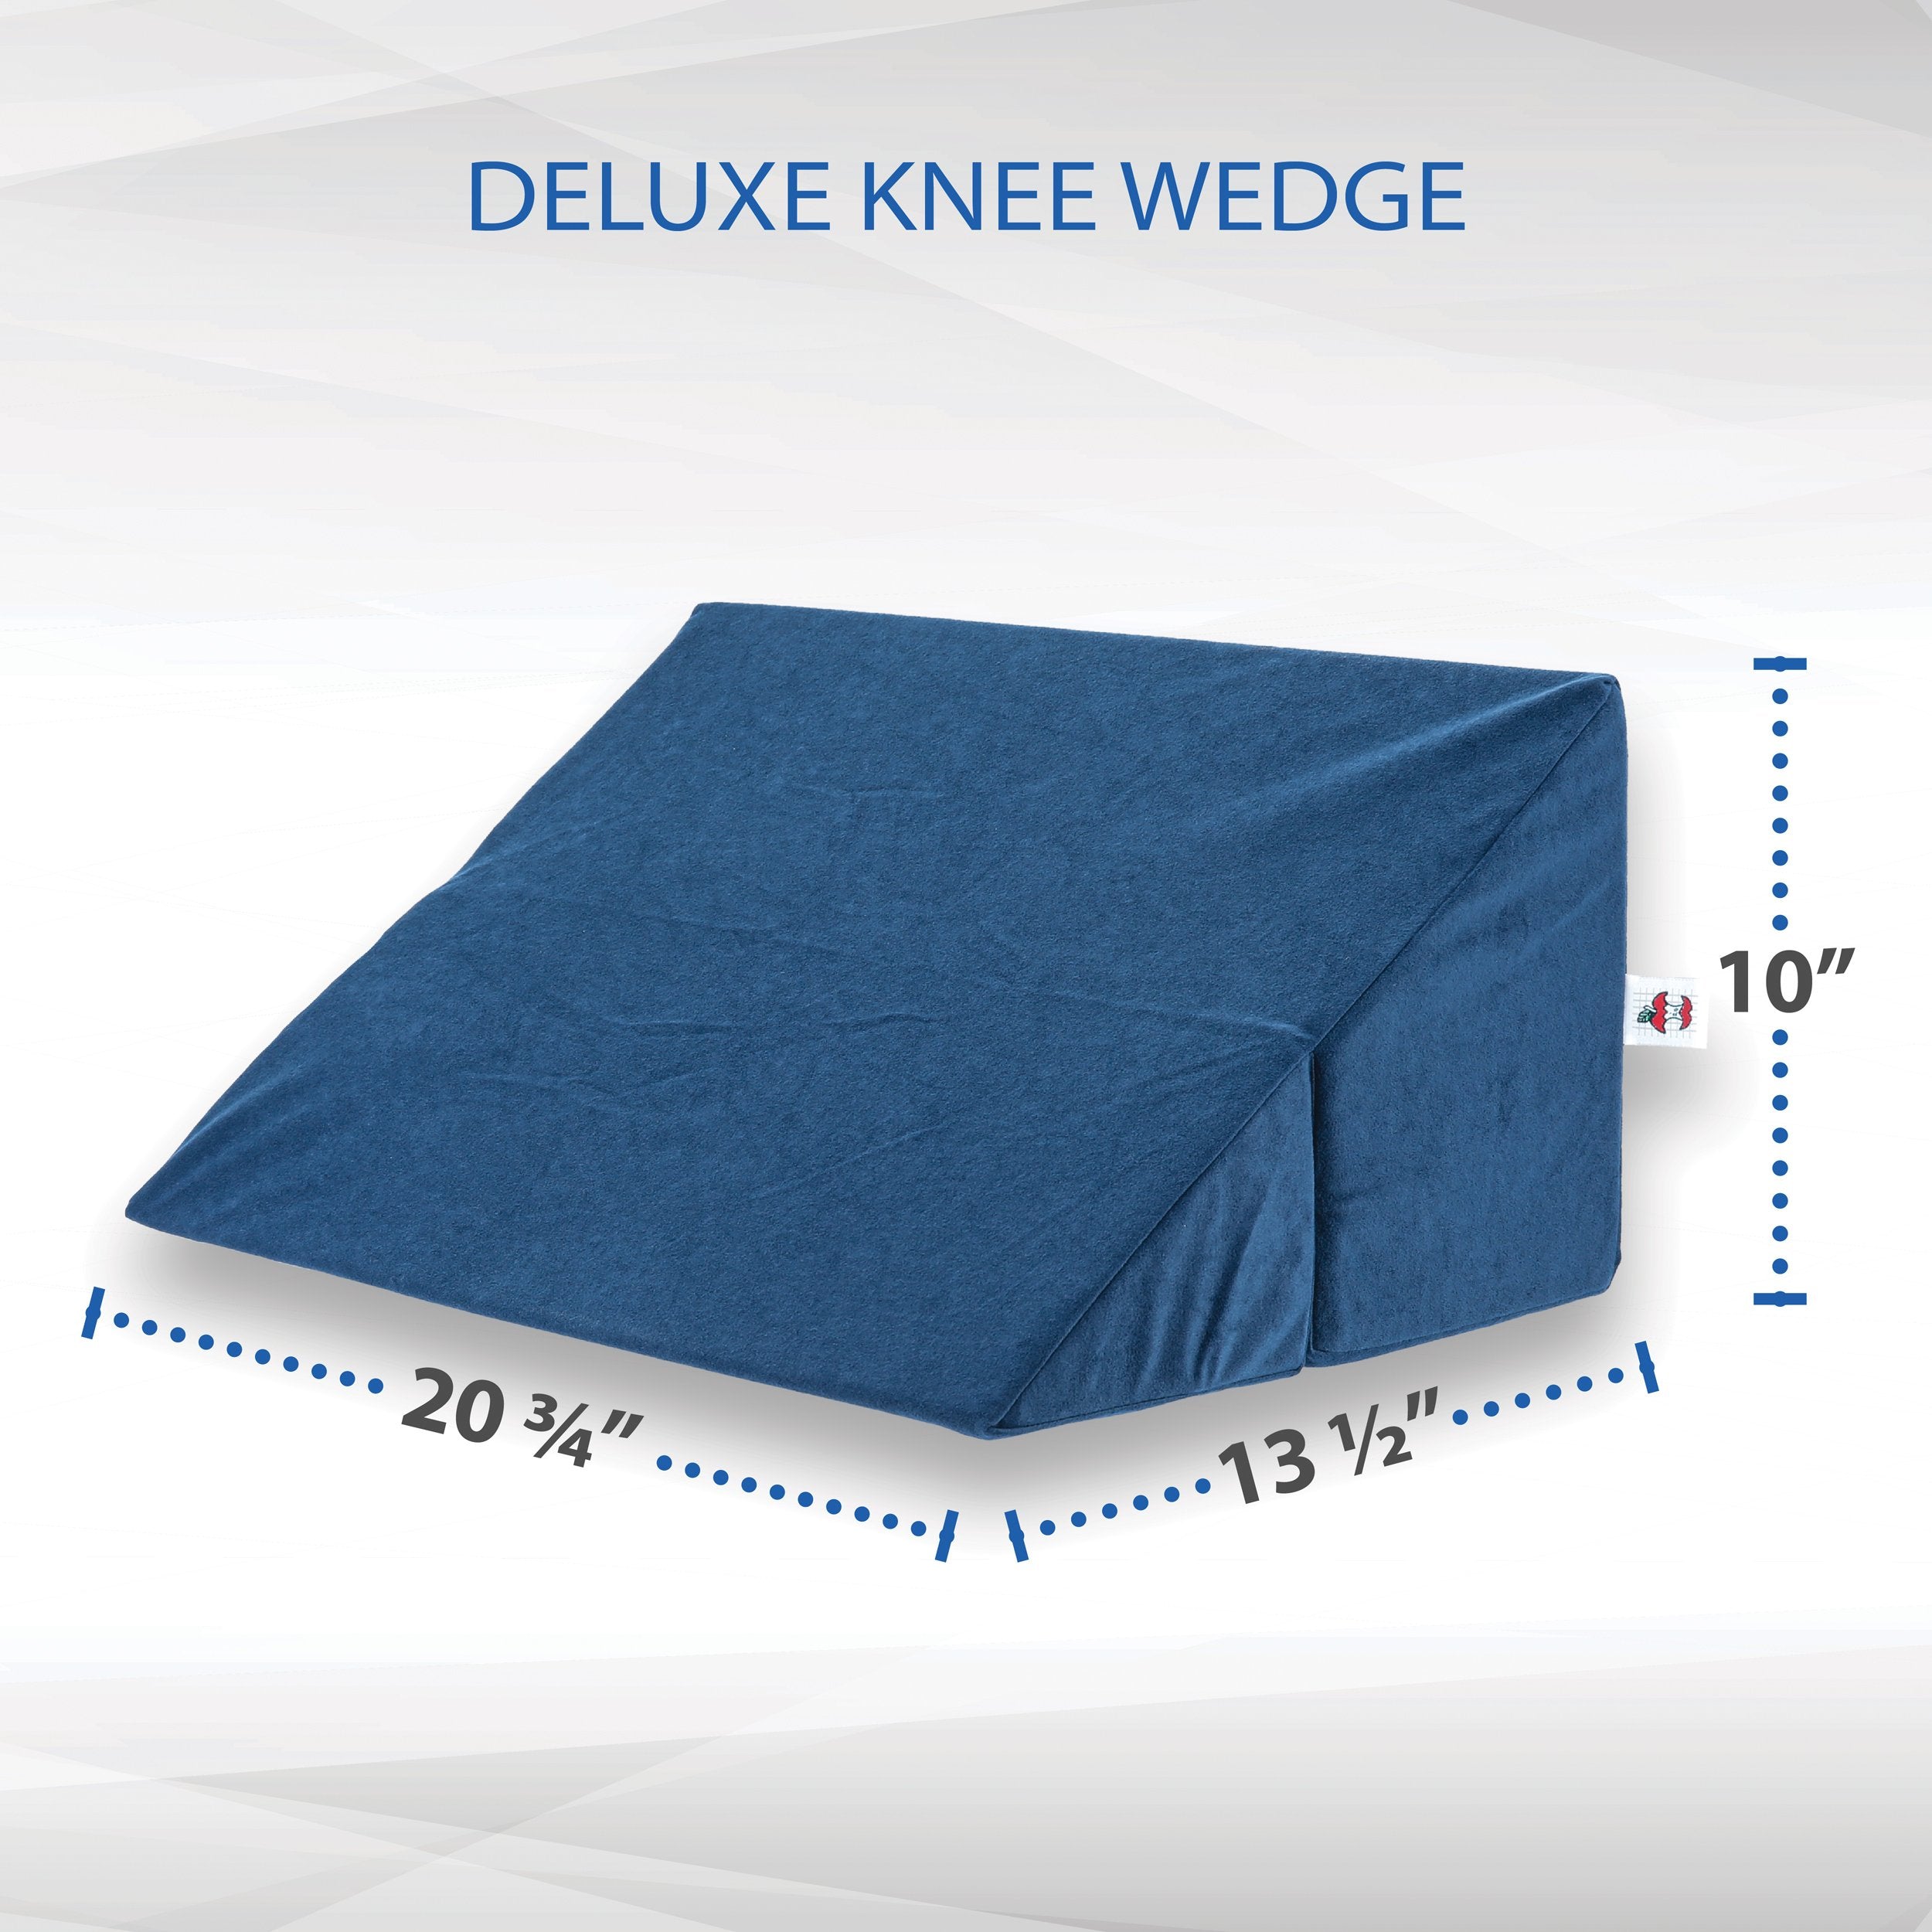 Deluxe Knee Wedge